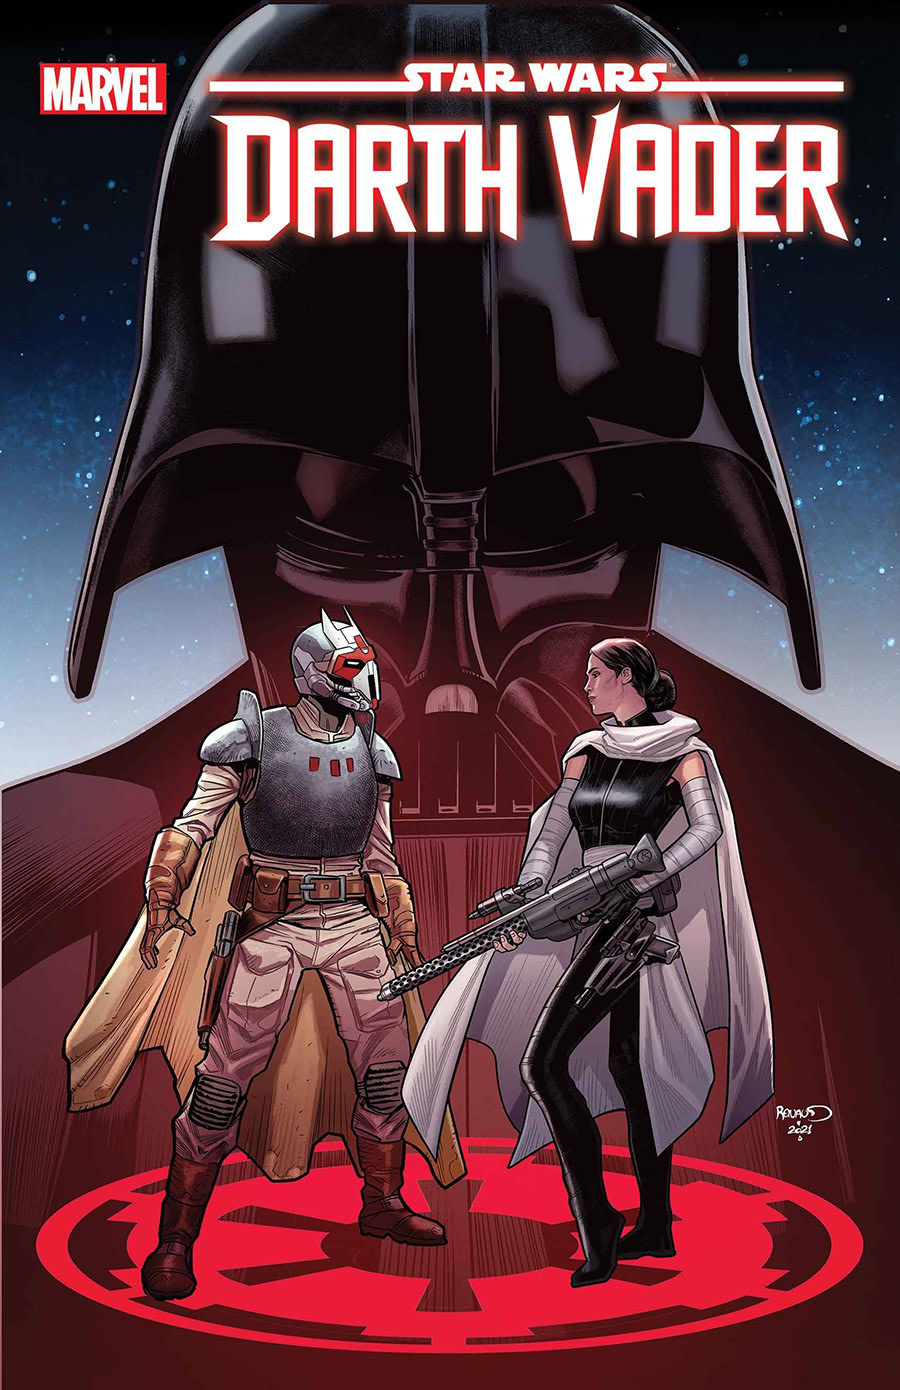 Star Wars Star Wars: Darth Vader #24